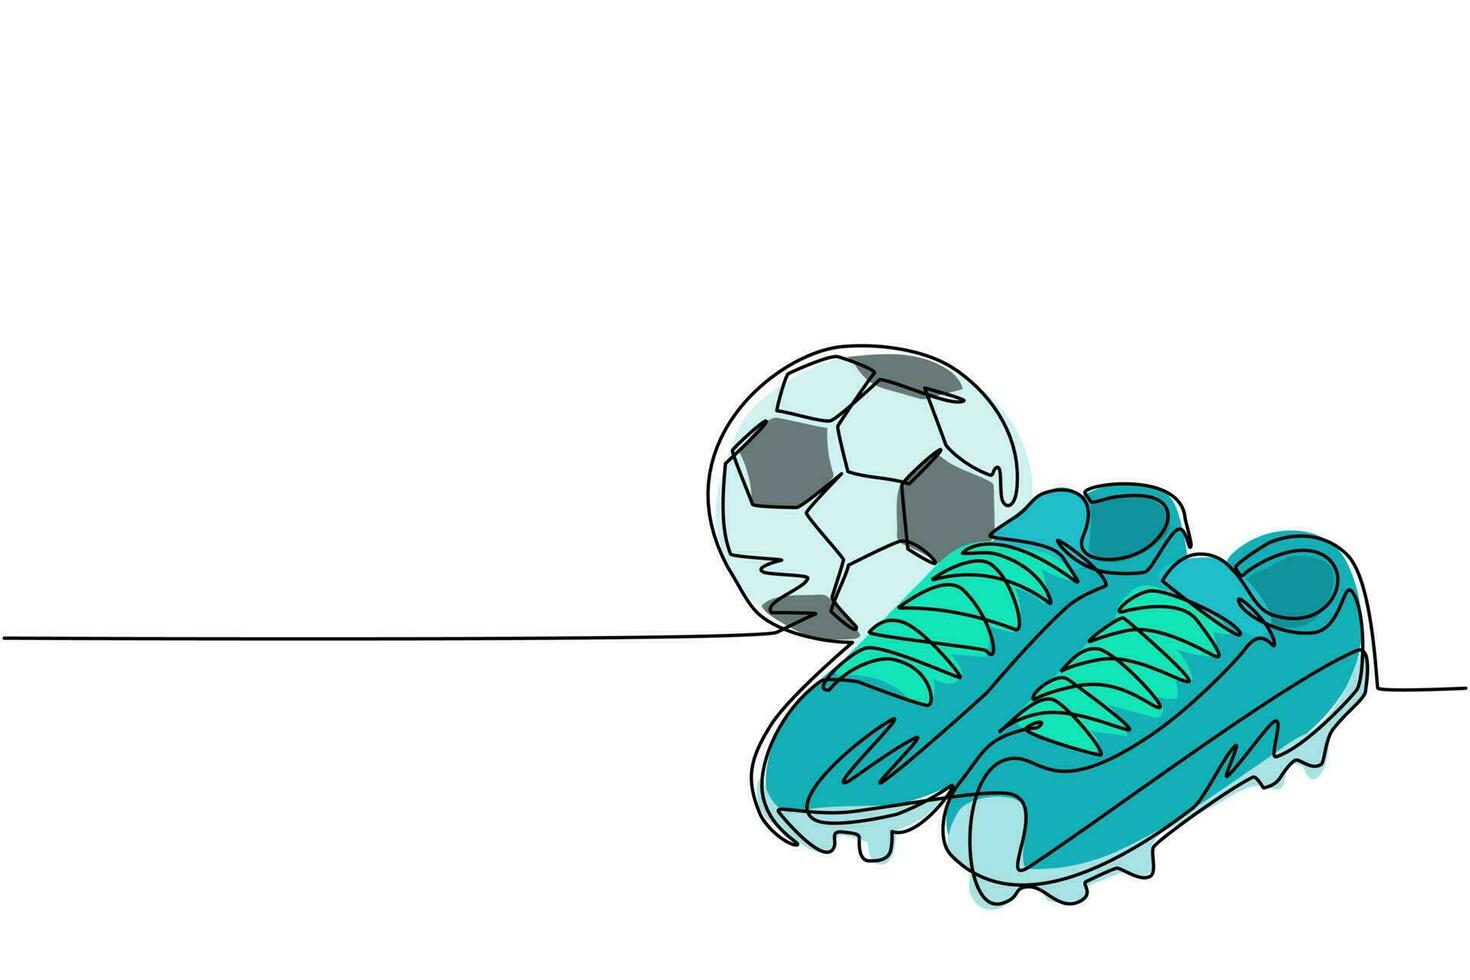 enkele doorlopende lijntekening voetbalschoenen en voetbal. voetbal icoon. voetbal laarzen. sport inventaris. voor sportwinkeladvertentie, app-pictogram, infographics. een lijn tekenen grafisch ontwerp vector